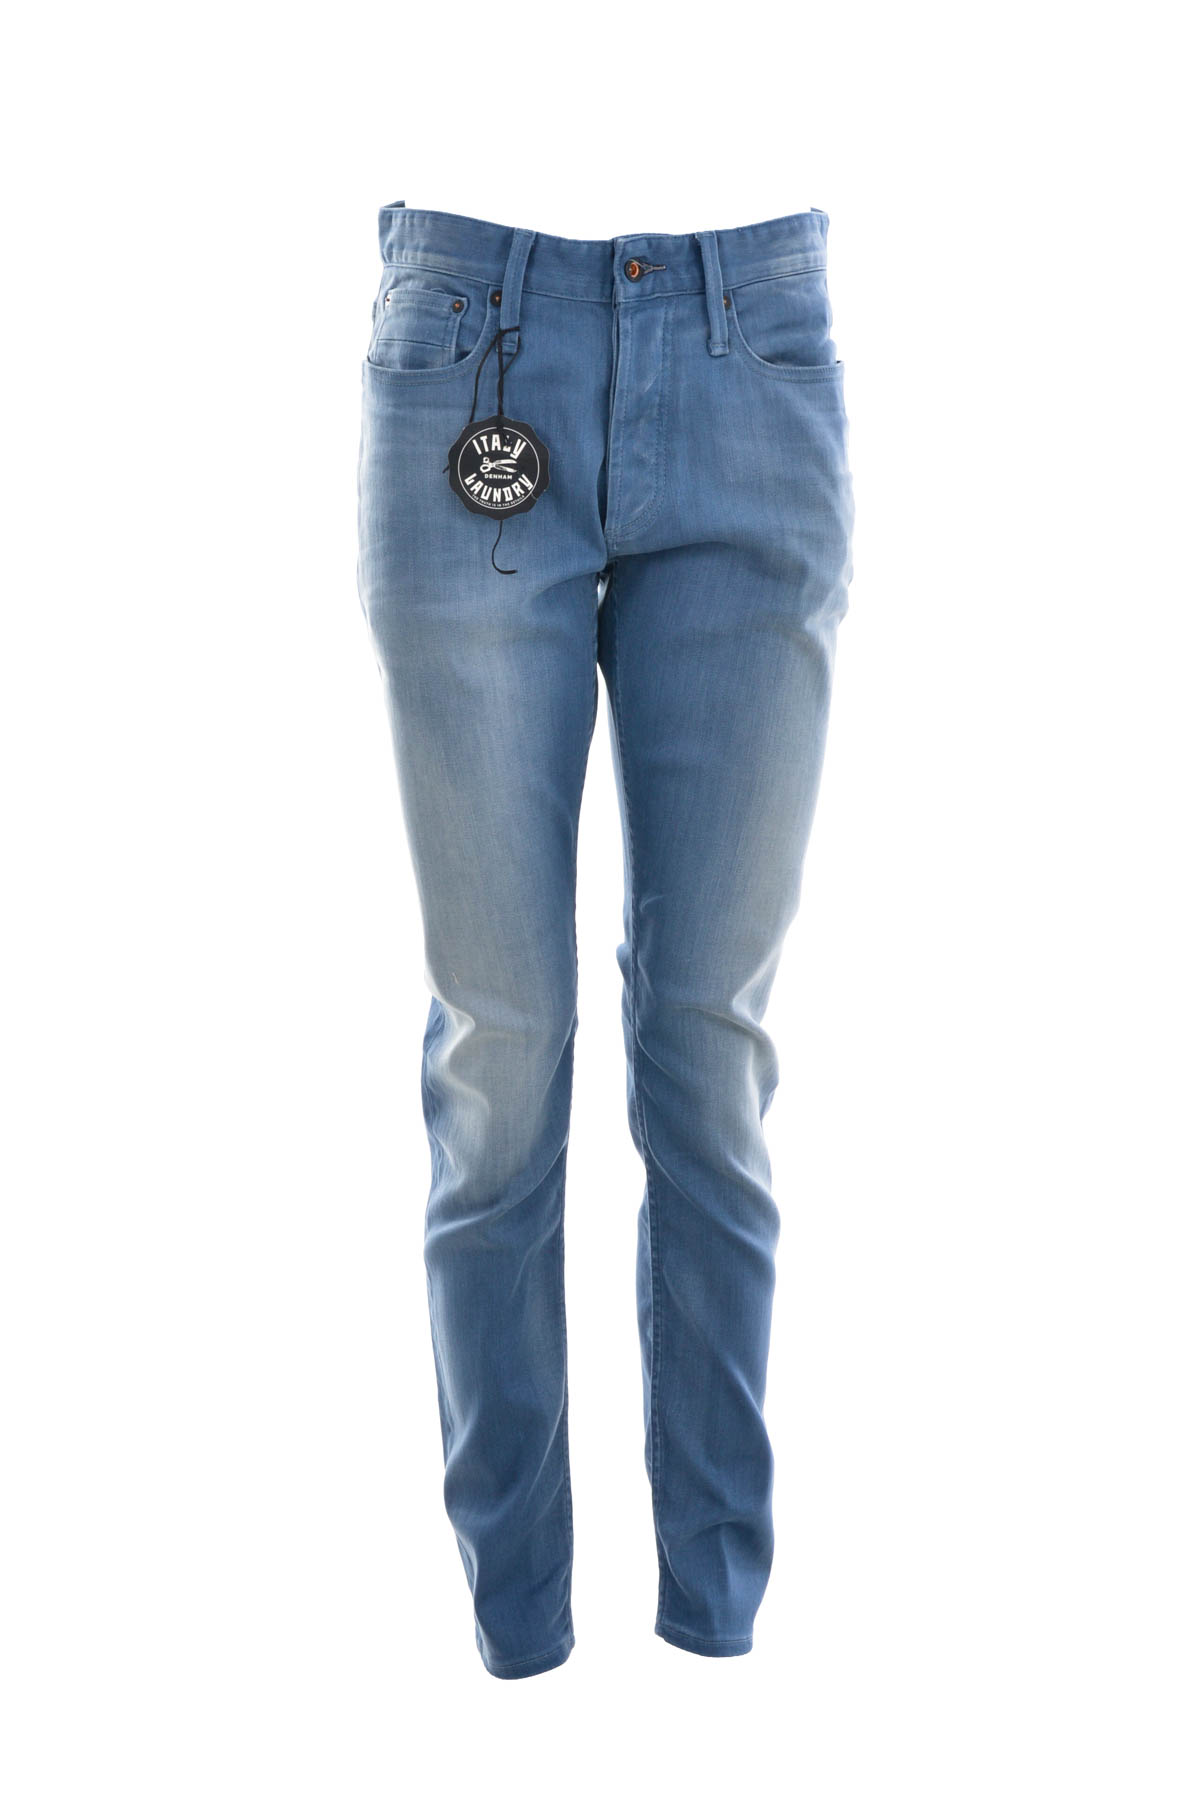 Men's jeans - DENHAM - 0